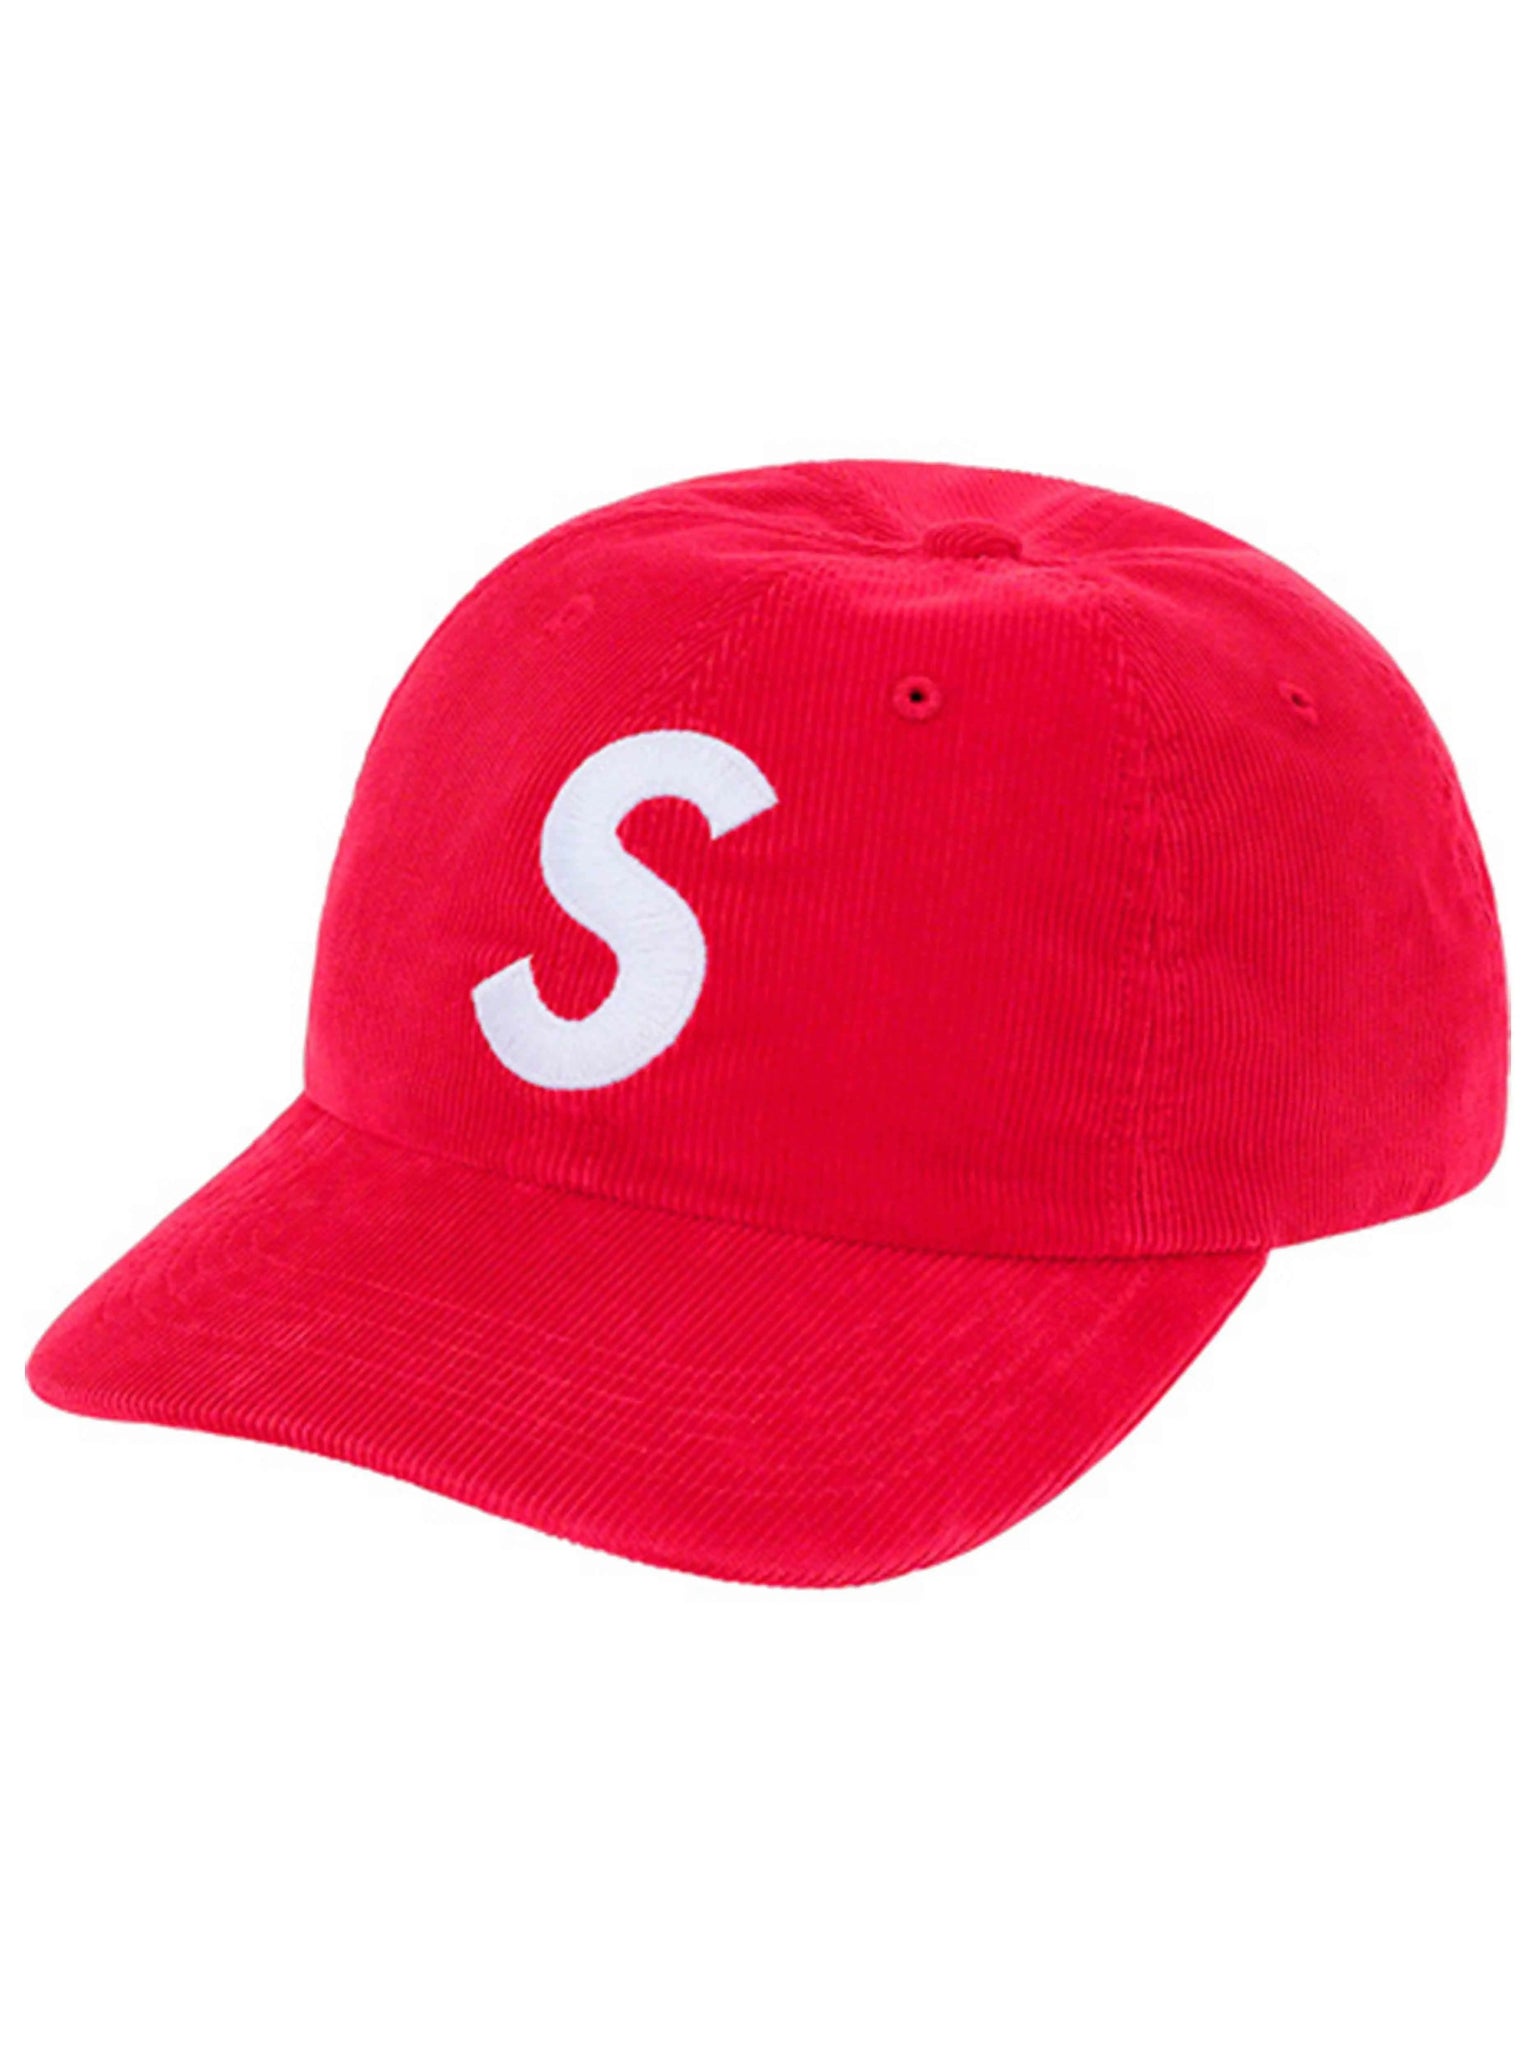 Supreme Loose Gauge Beanie Hat OS One Size FW19 Dark Brick Red